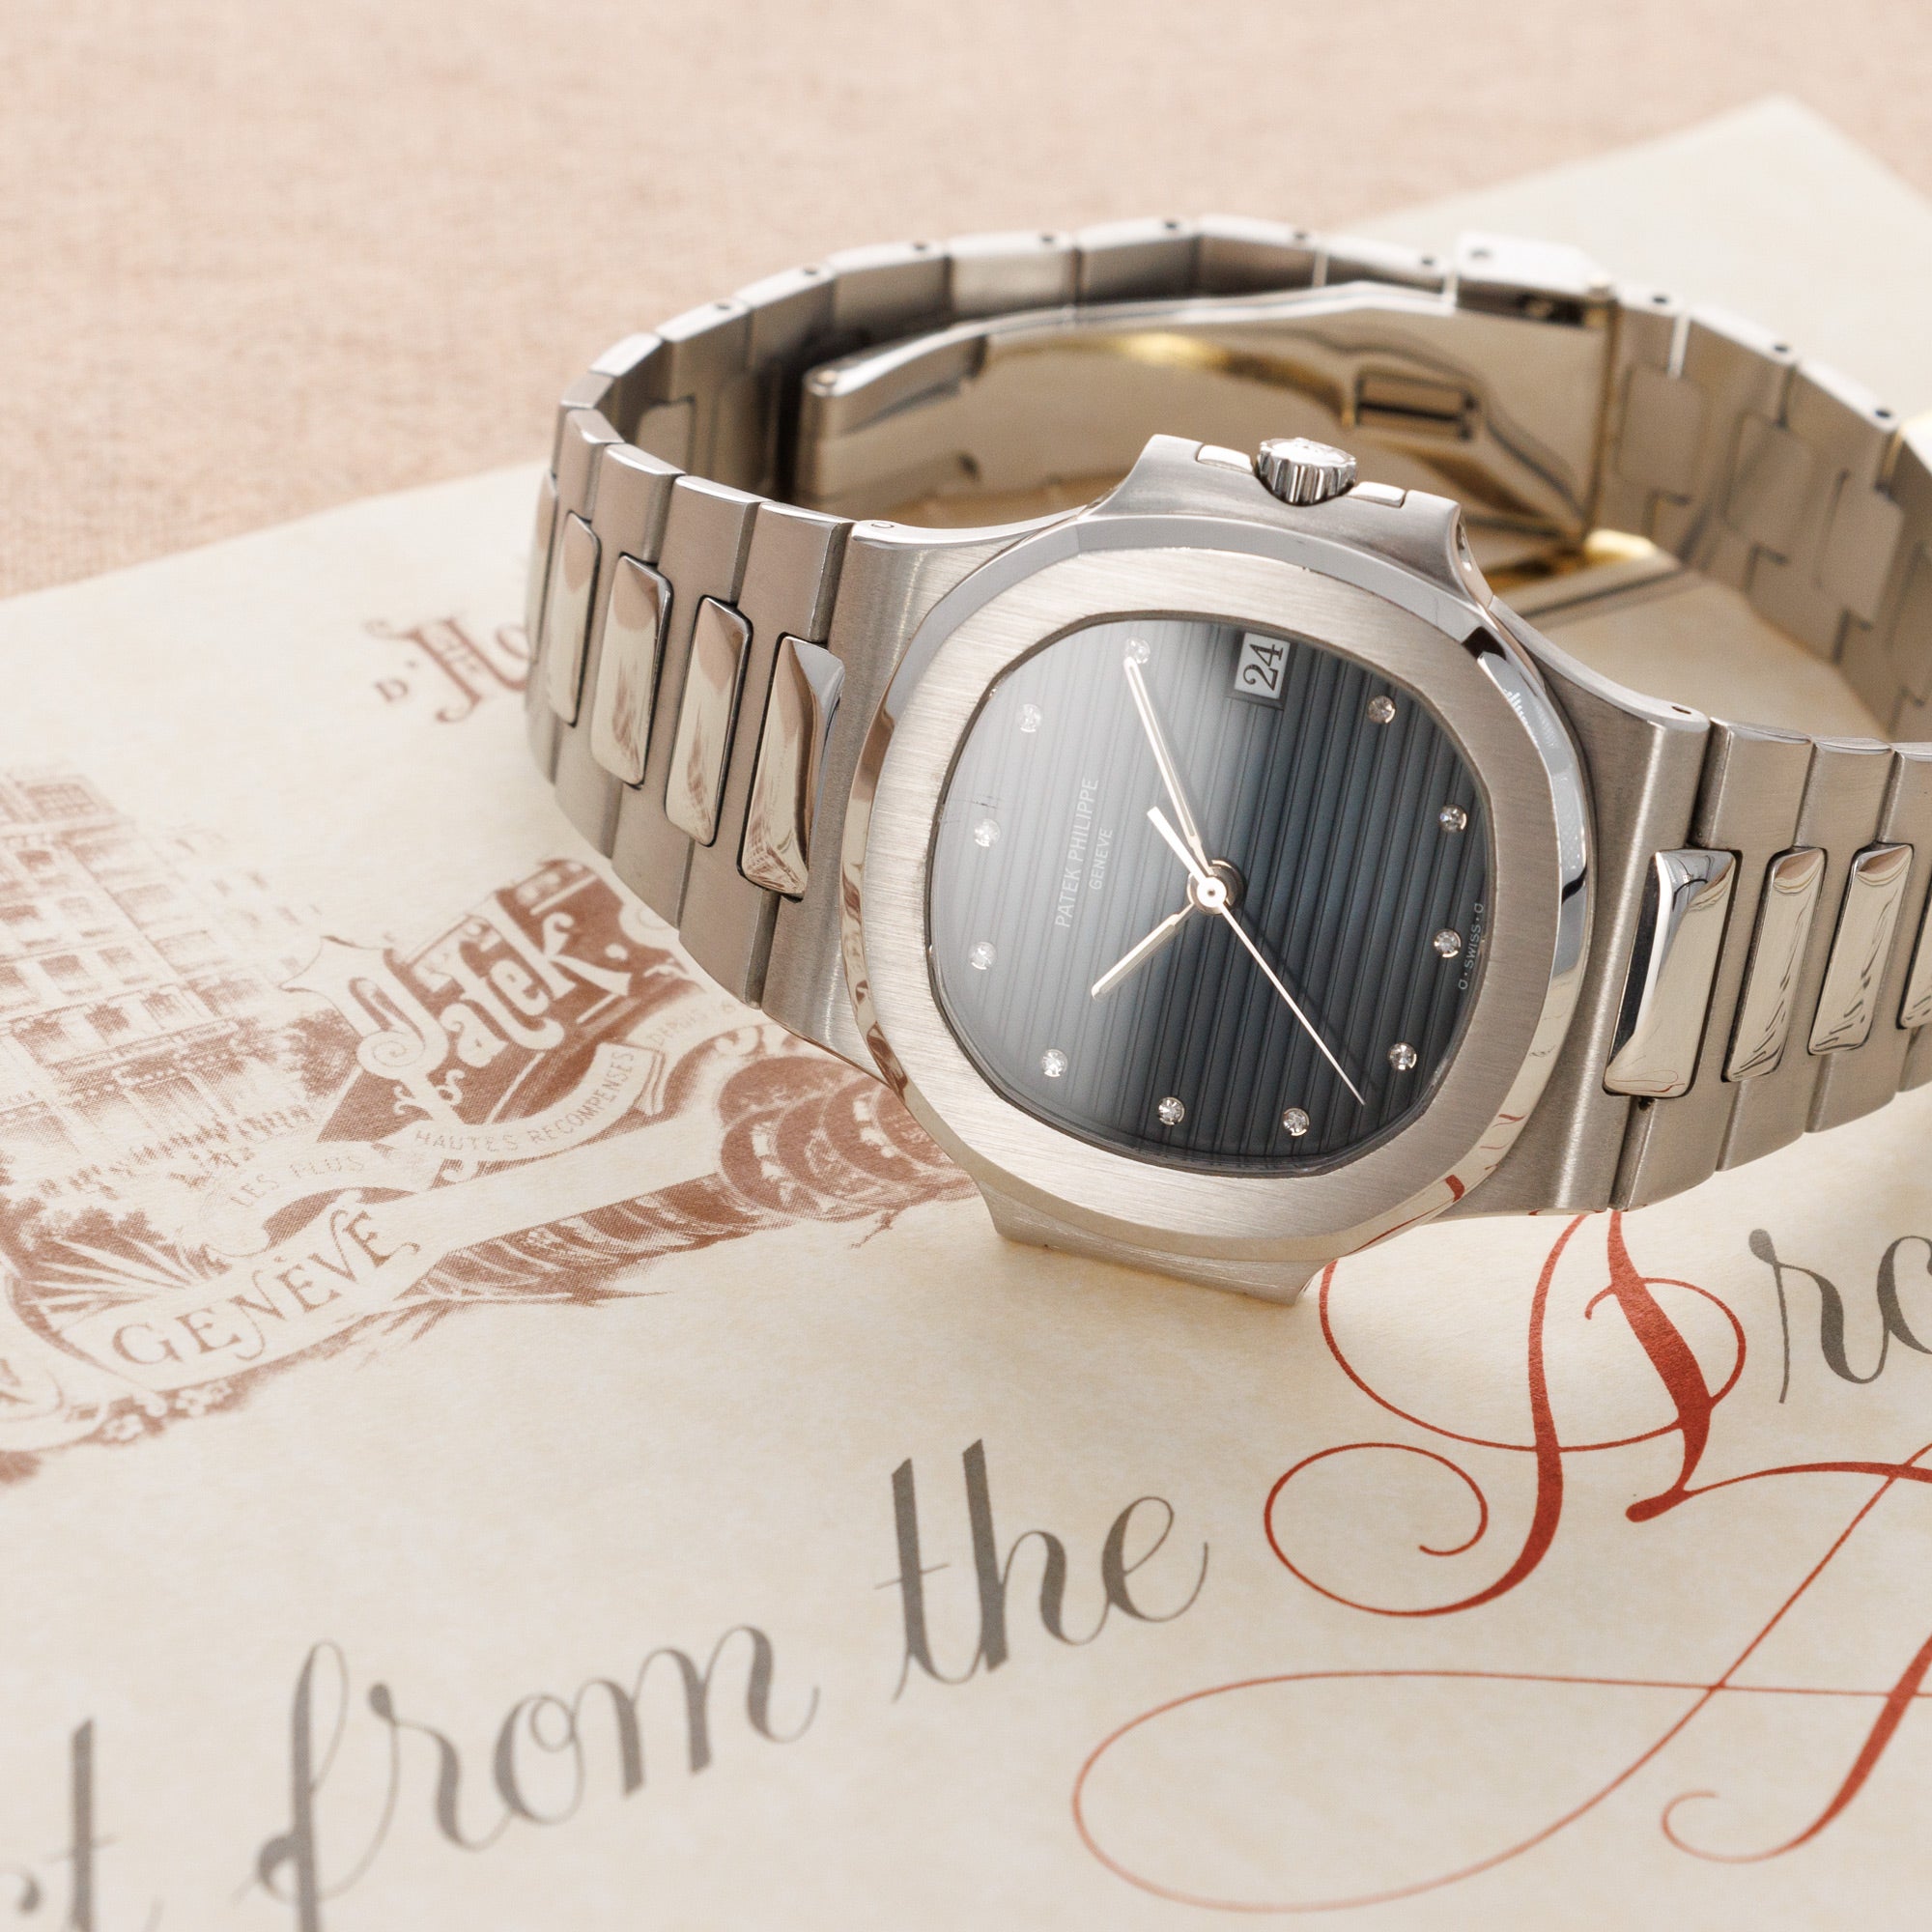 Patek Philippe - Patek Philippe Platinum Nautilus Watch Ref. 3800 - The Keystone Watches